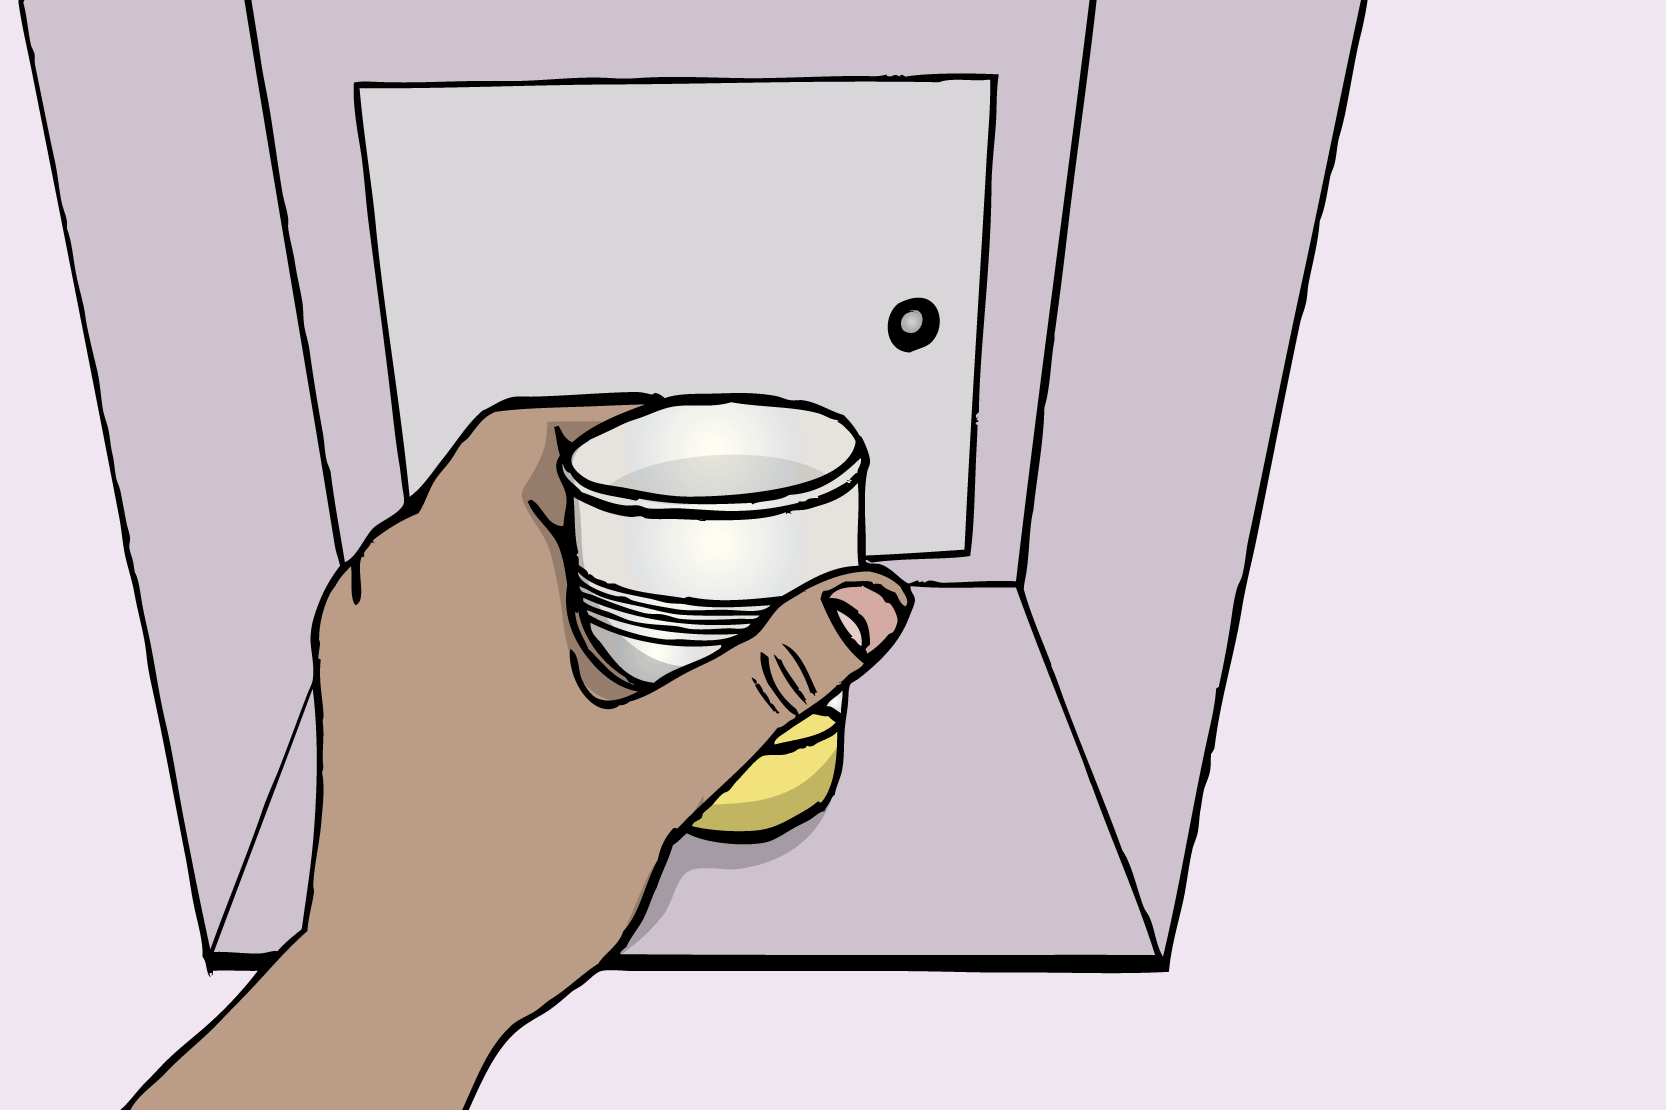 En hand ställer in ett urinprov i en lucka. Illustration.